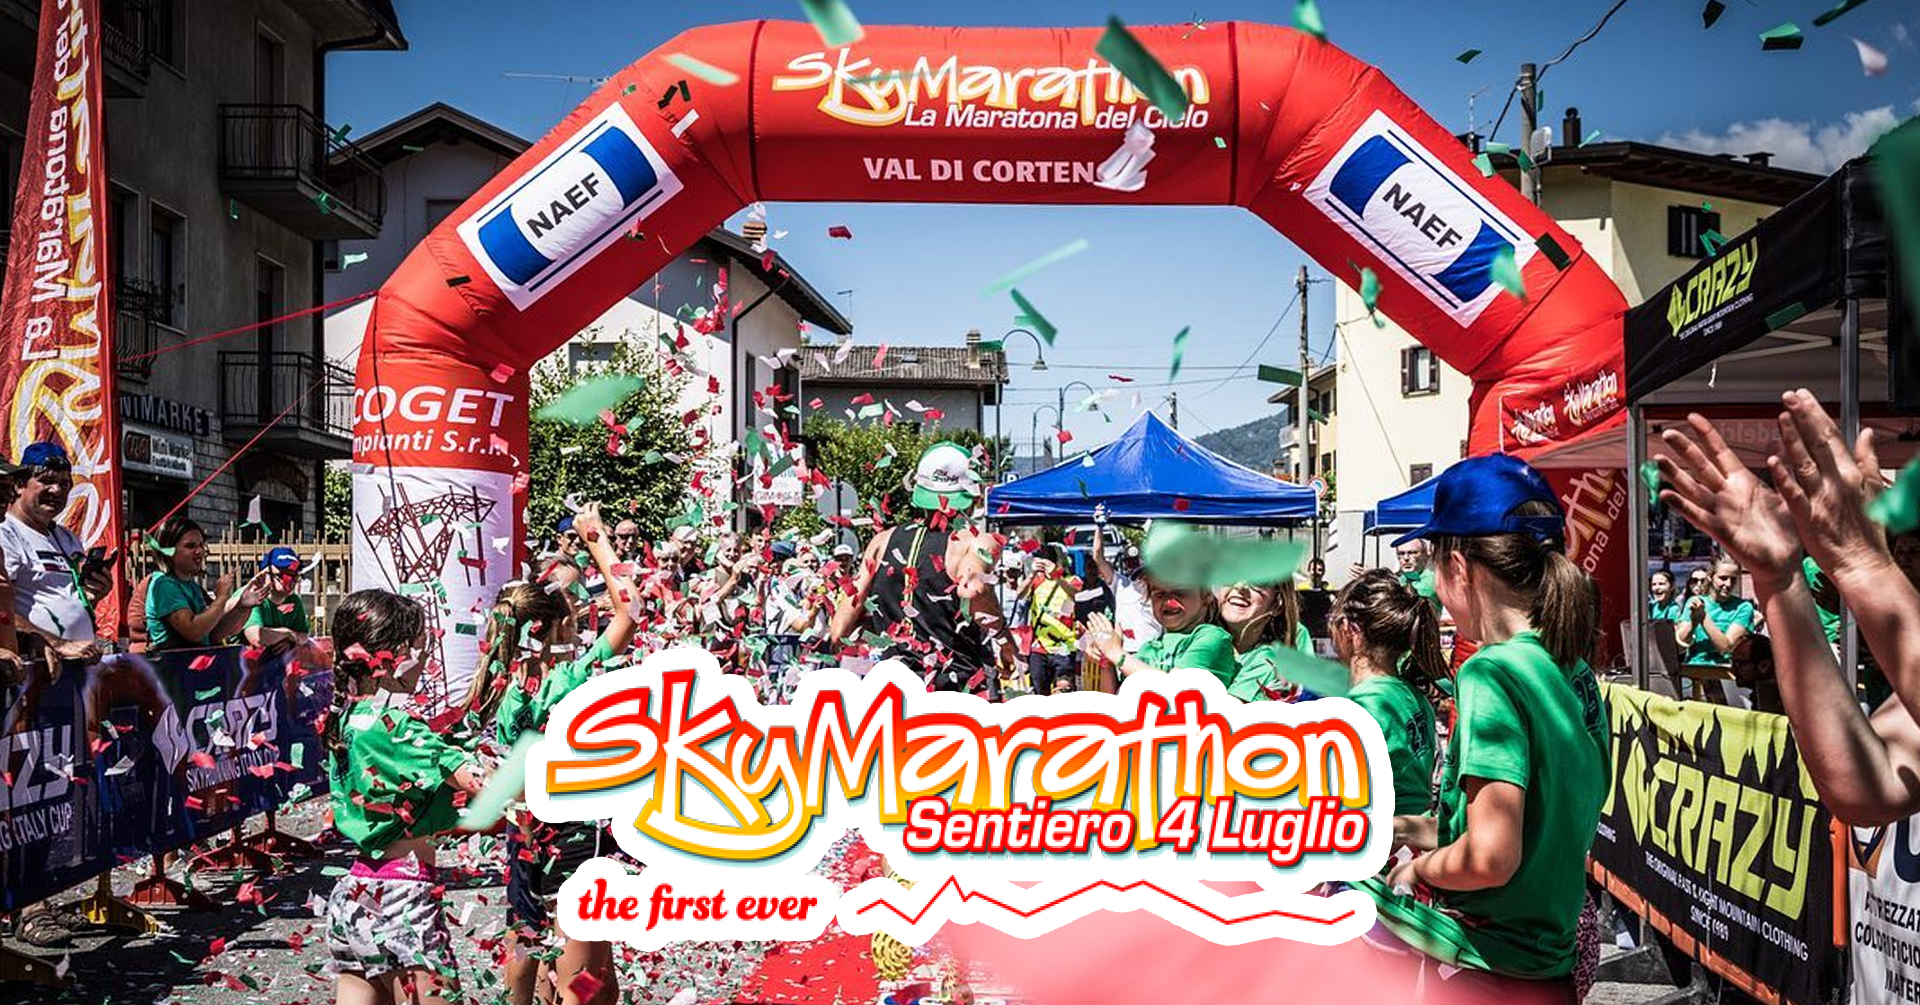 Sky Marathon - Sentiero 4 luglio - 25esima edizione